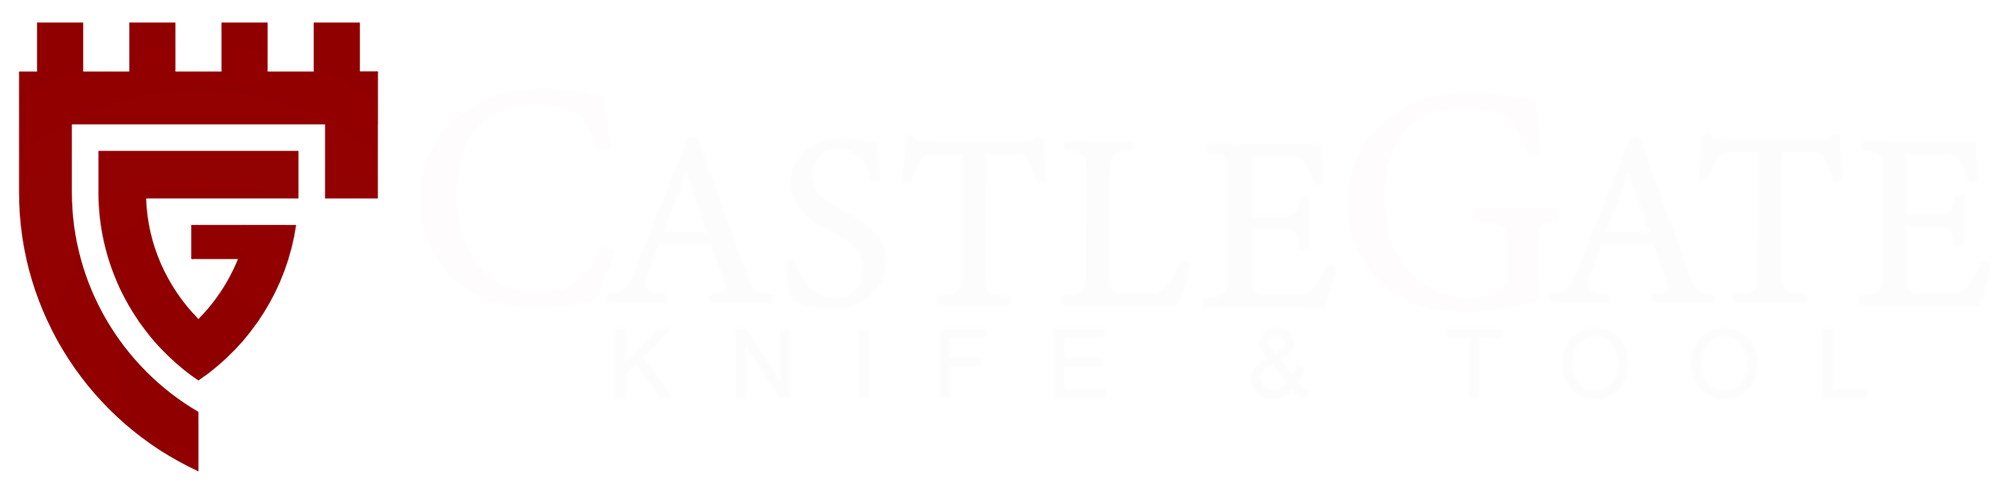 CastleGate Knife & Tool